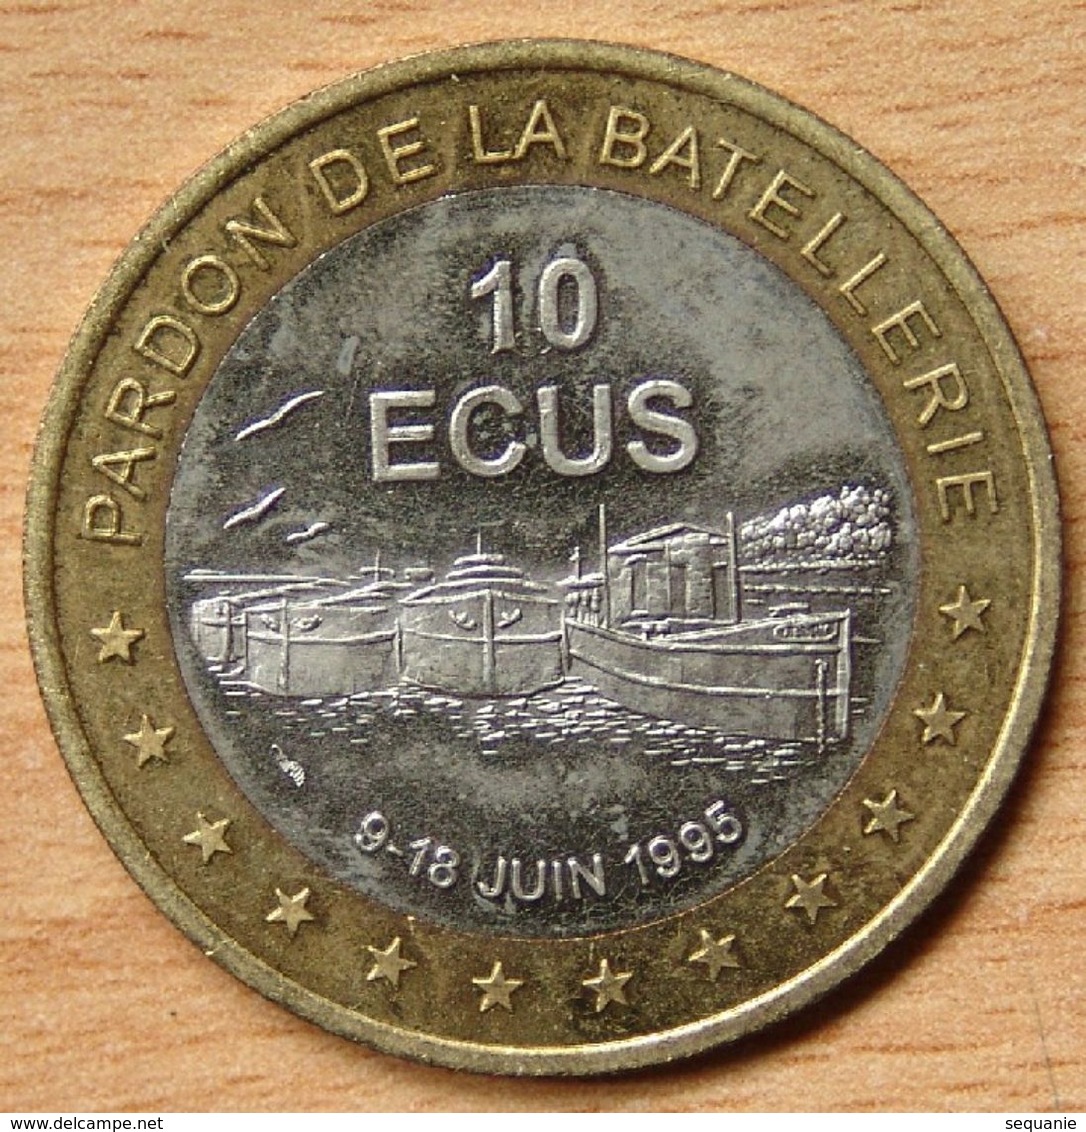 France 10 Ecus 1995 Bimétallique Conflans-Sainte-Honorine (78)/ Pardon De La Batellerie / - Euros Of The Cities